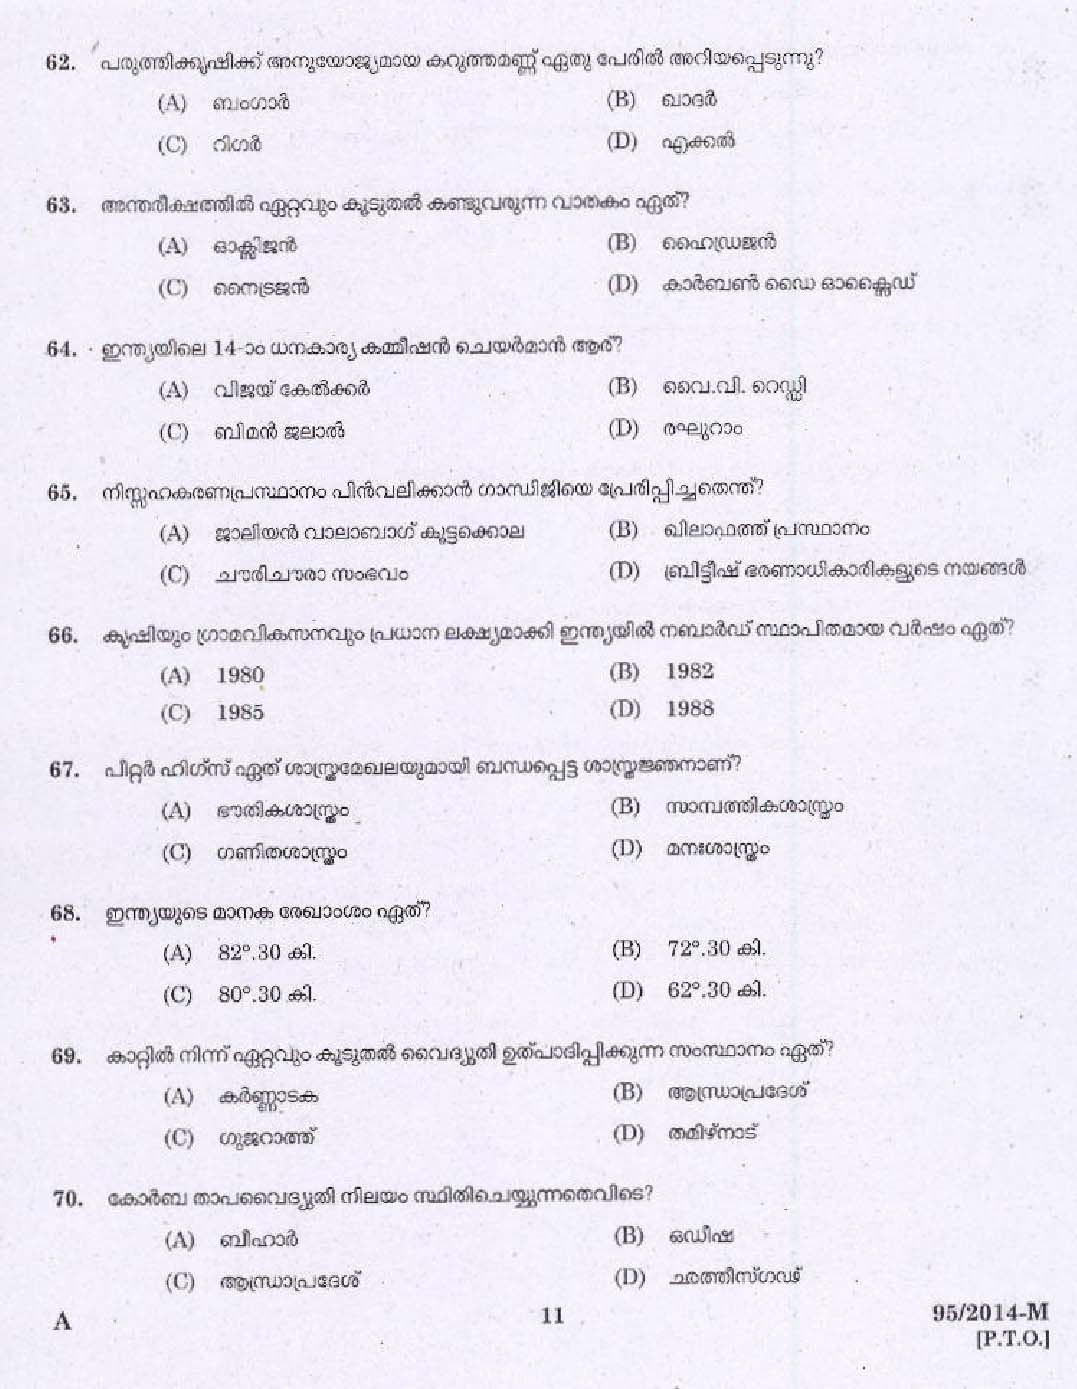 KPSC Village Extension Officer Grade II Exam 2014 Code 952014 M 9